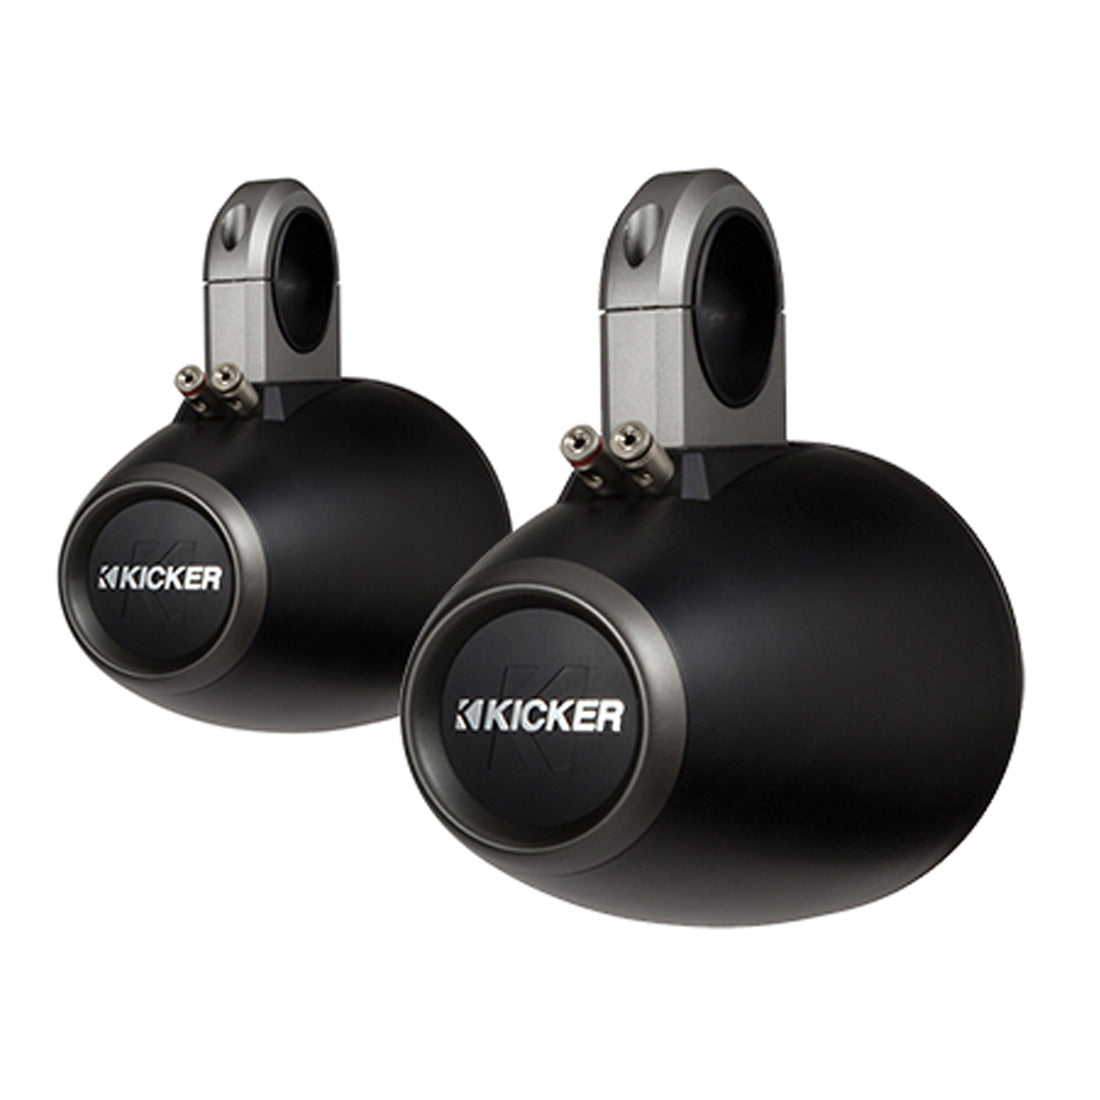 Kicker 12KMTES 6.5” Unloaded Tower Enclosures for Kicker 6.5" Marine Speakers - Black